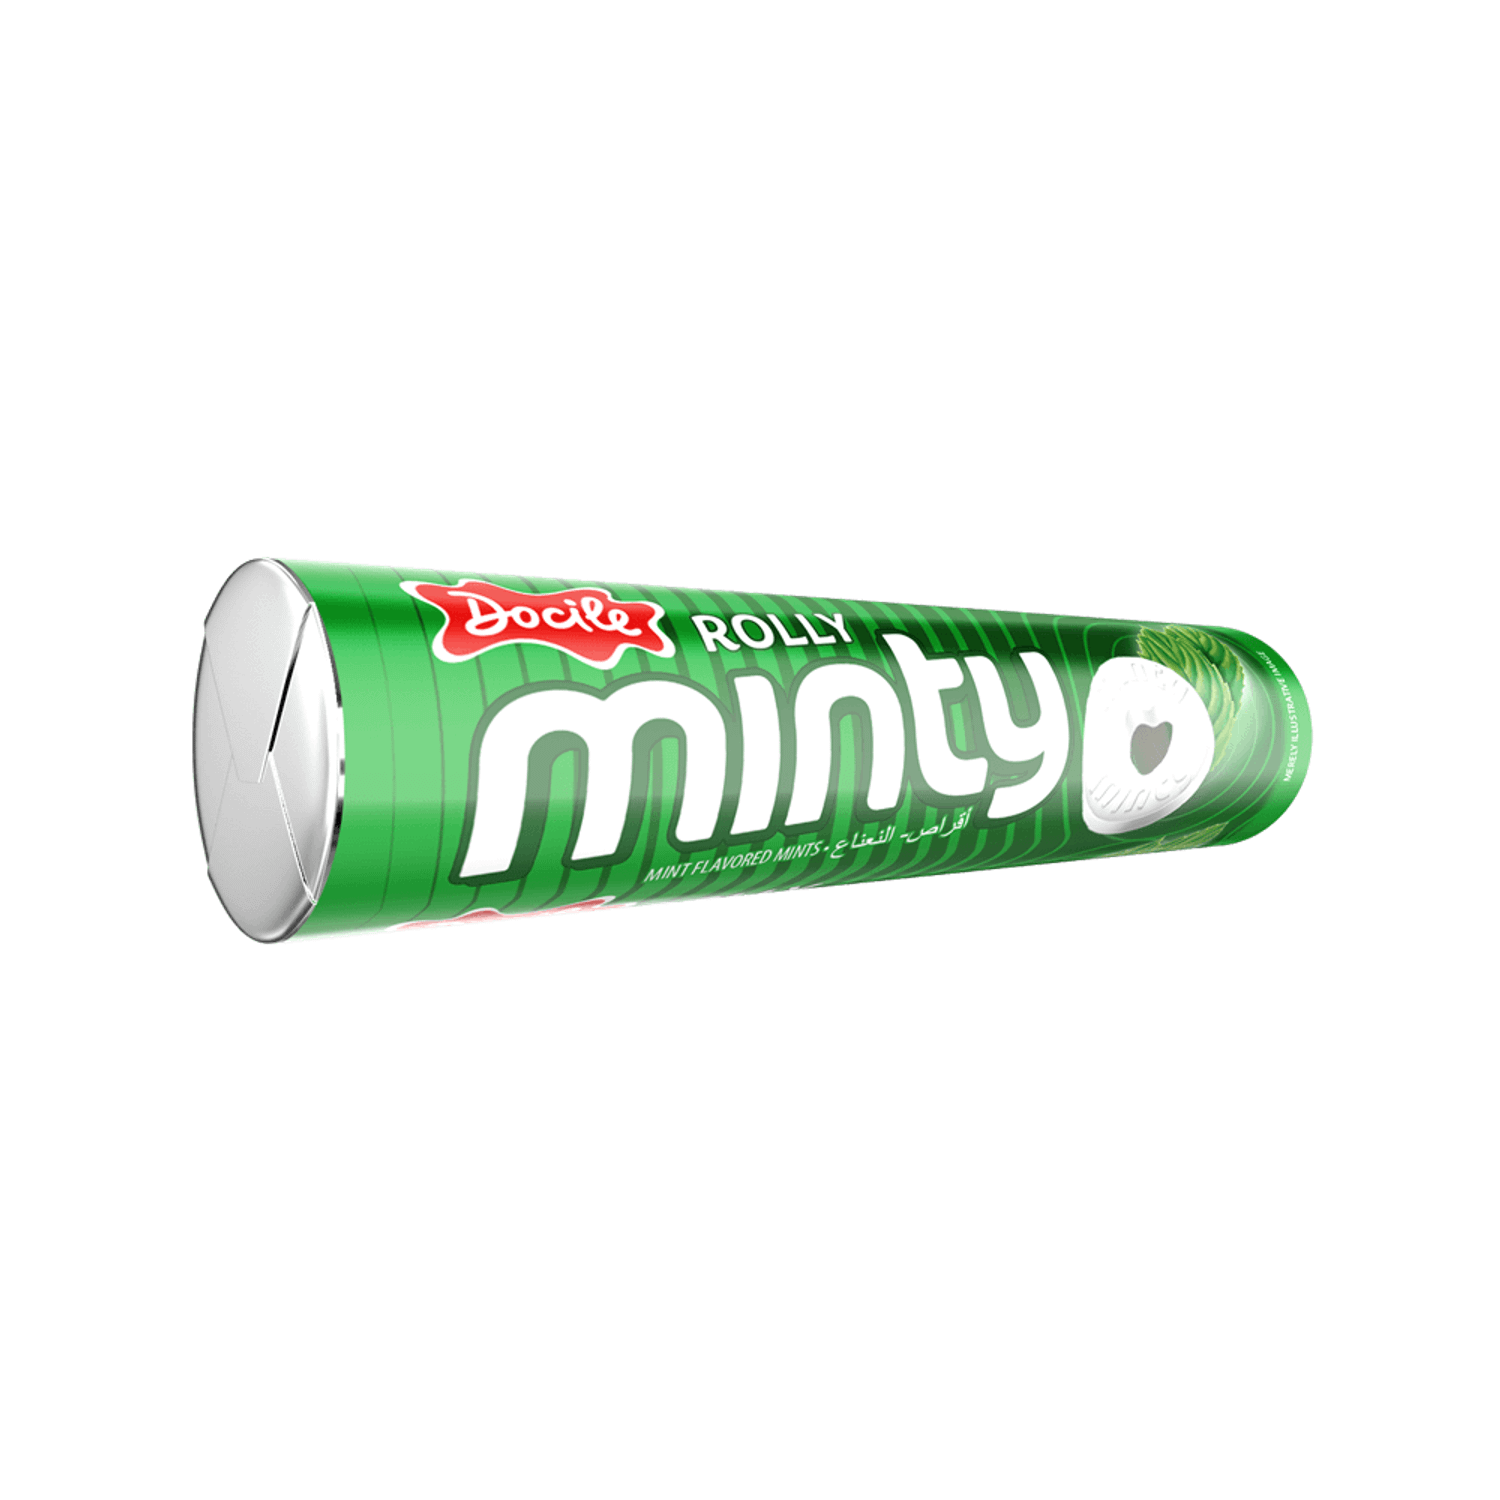 Конфеты Docile Rolly mini mint Мята 29г - фото 1